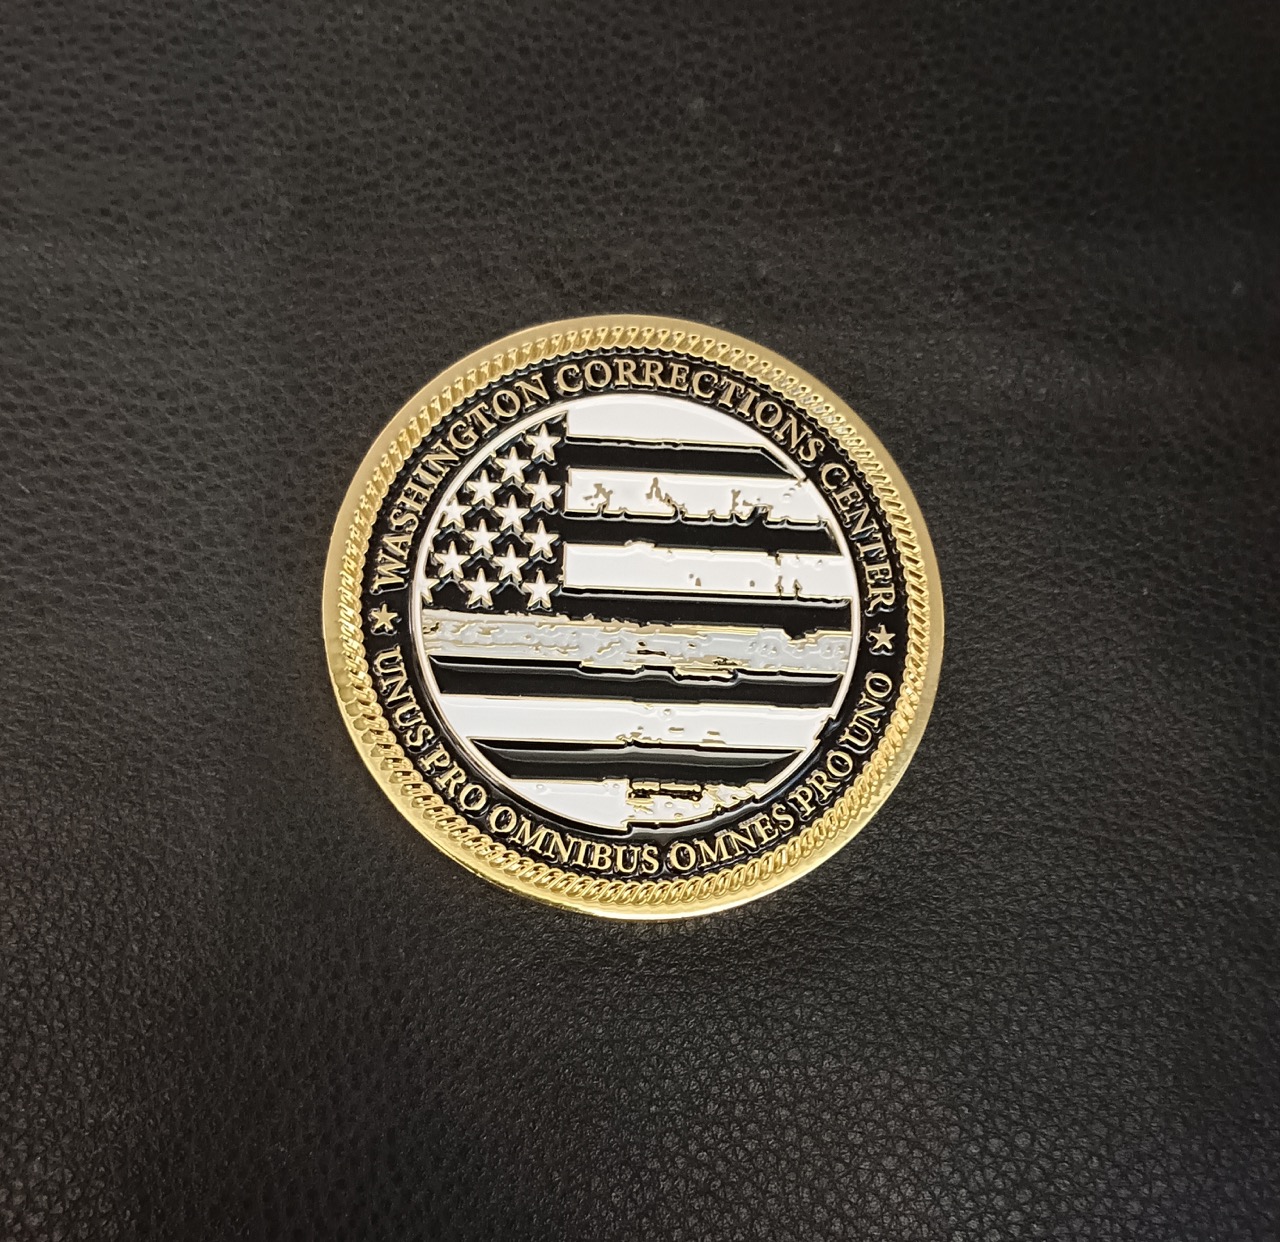 Law Enforcement Challenge Coins